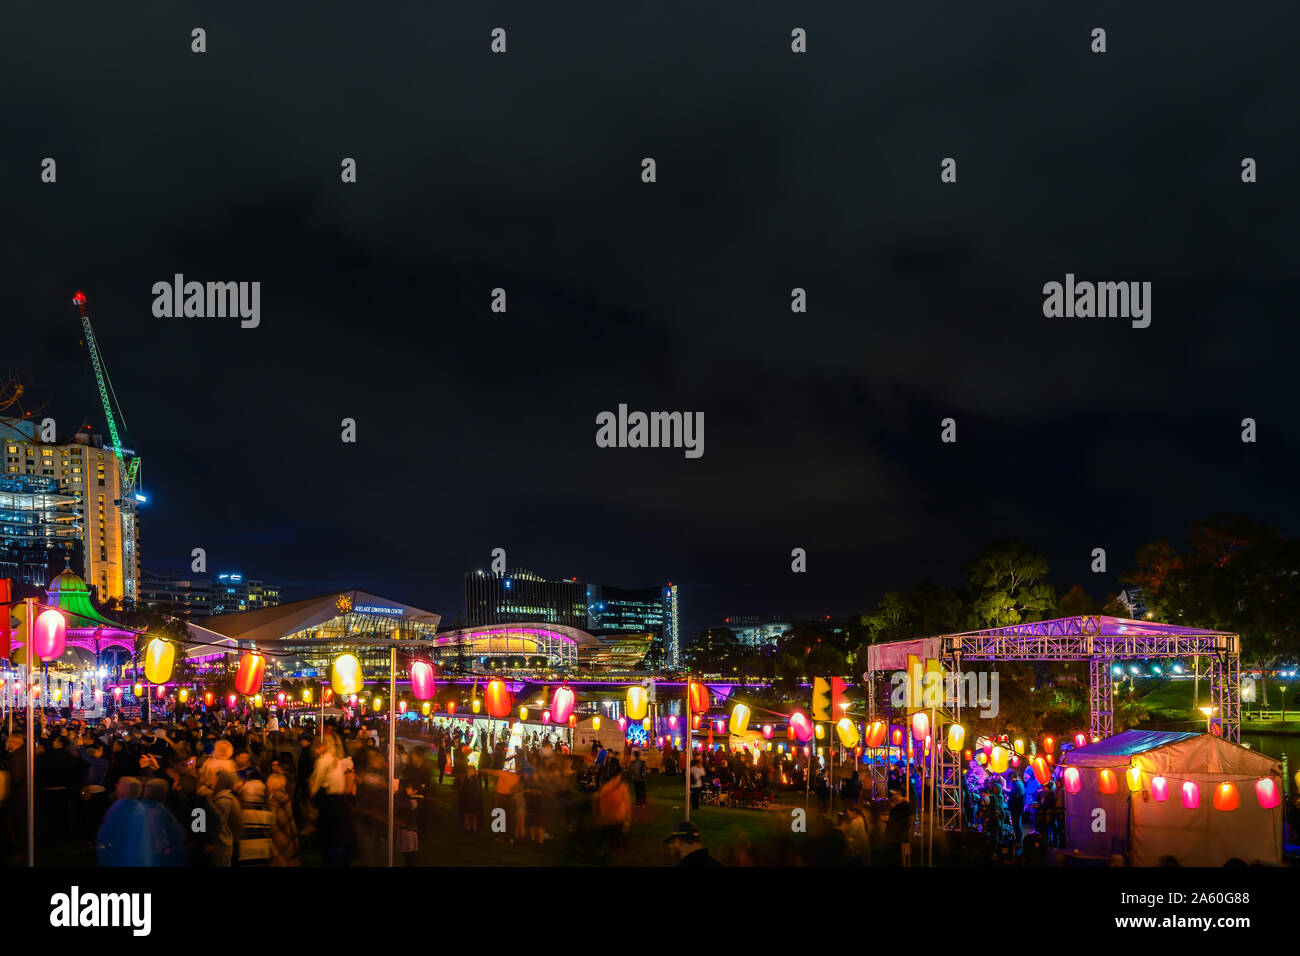 Adelaide, Australien - Oktober 19, 2019: Elder Park voll mit Menschen während der Mond Laterne Fest Feier verpackt in der Nacht Stockfoto